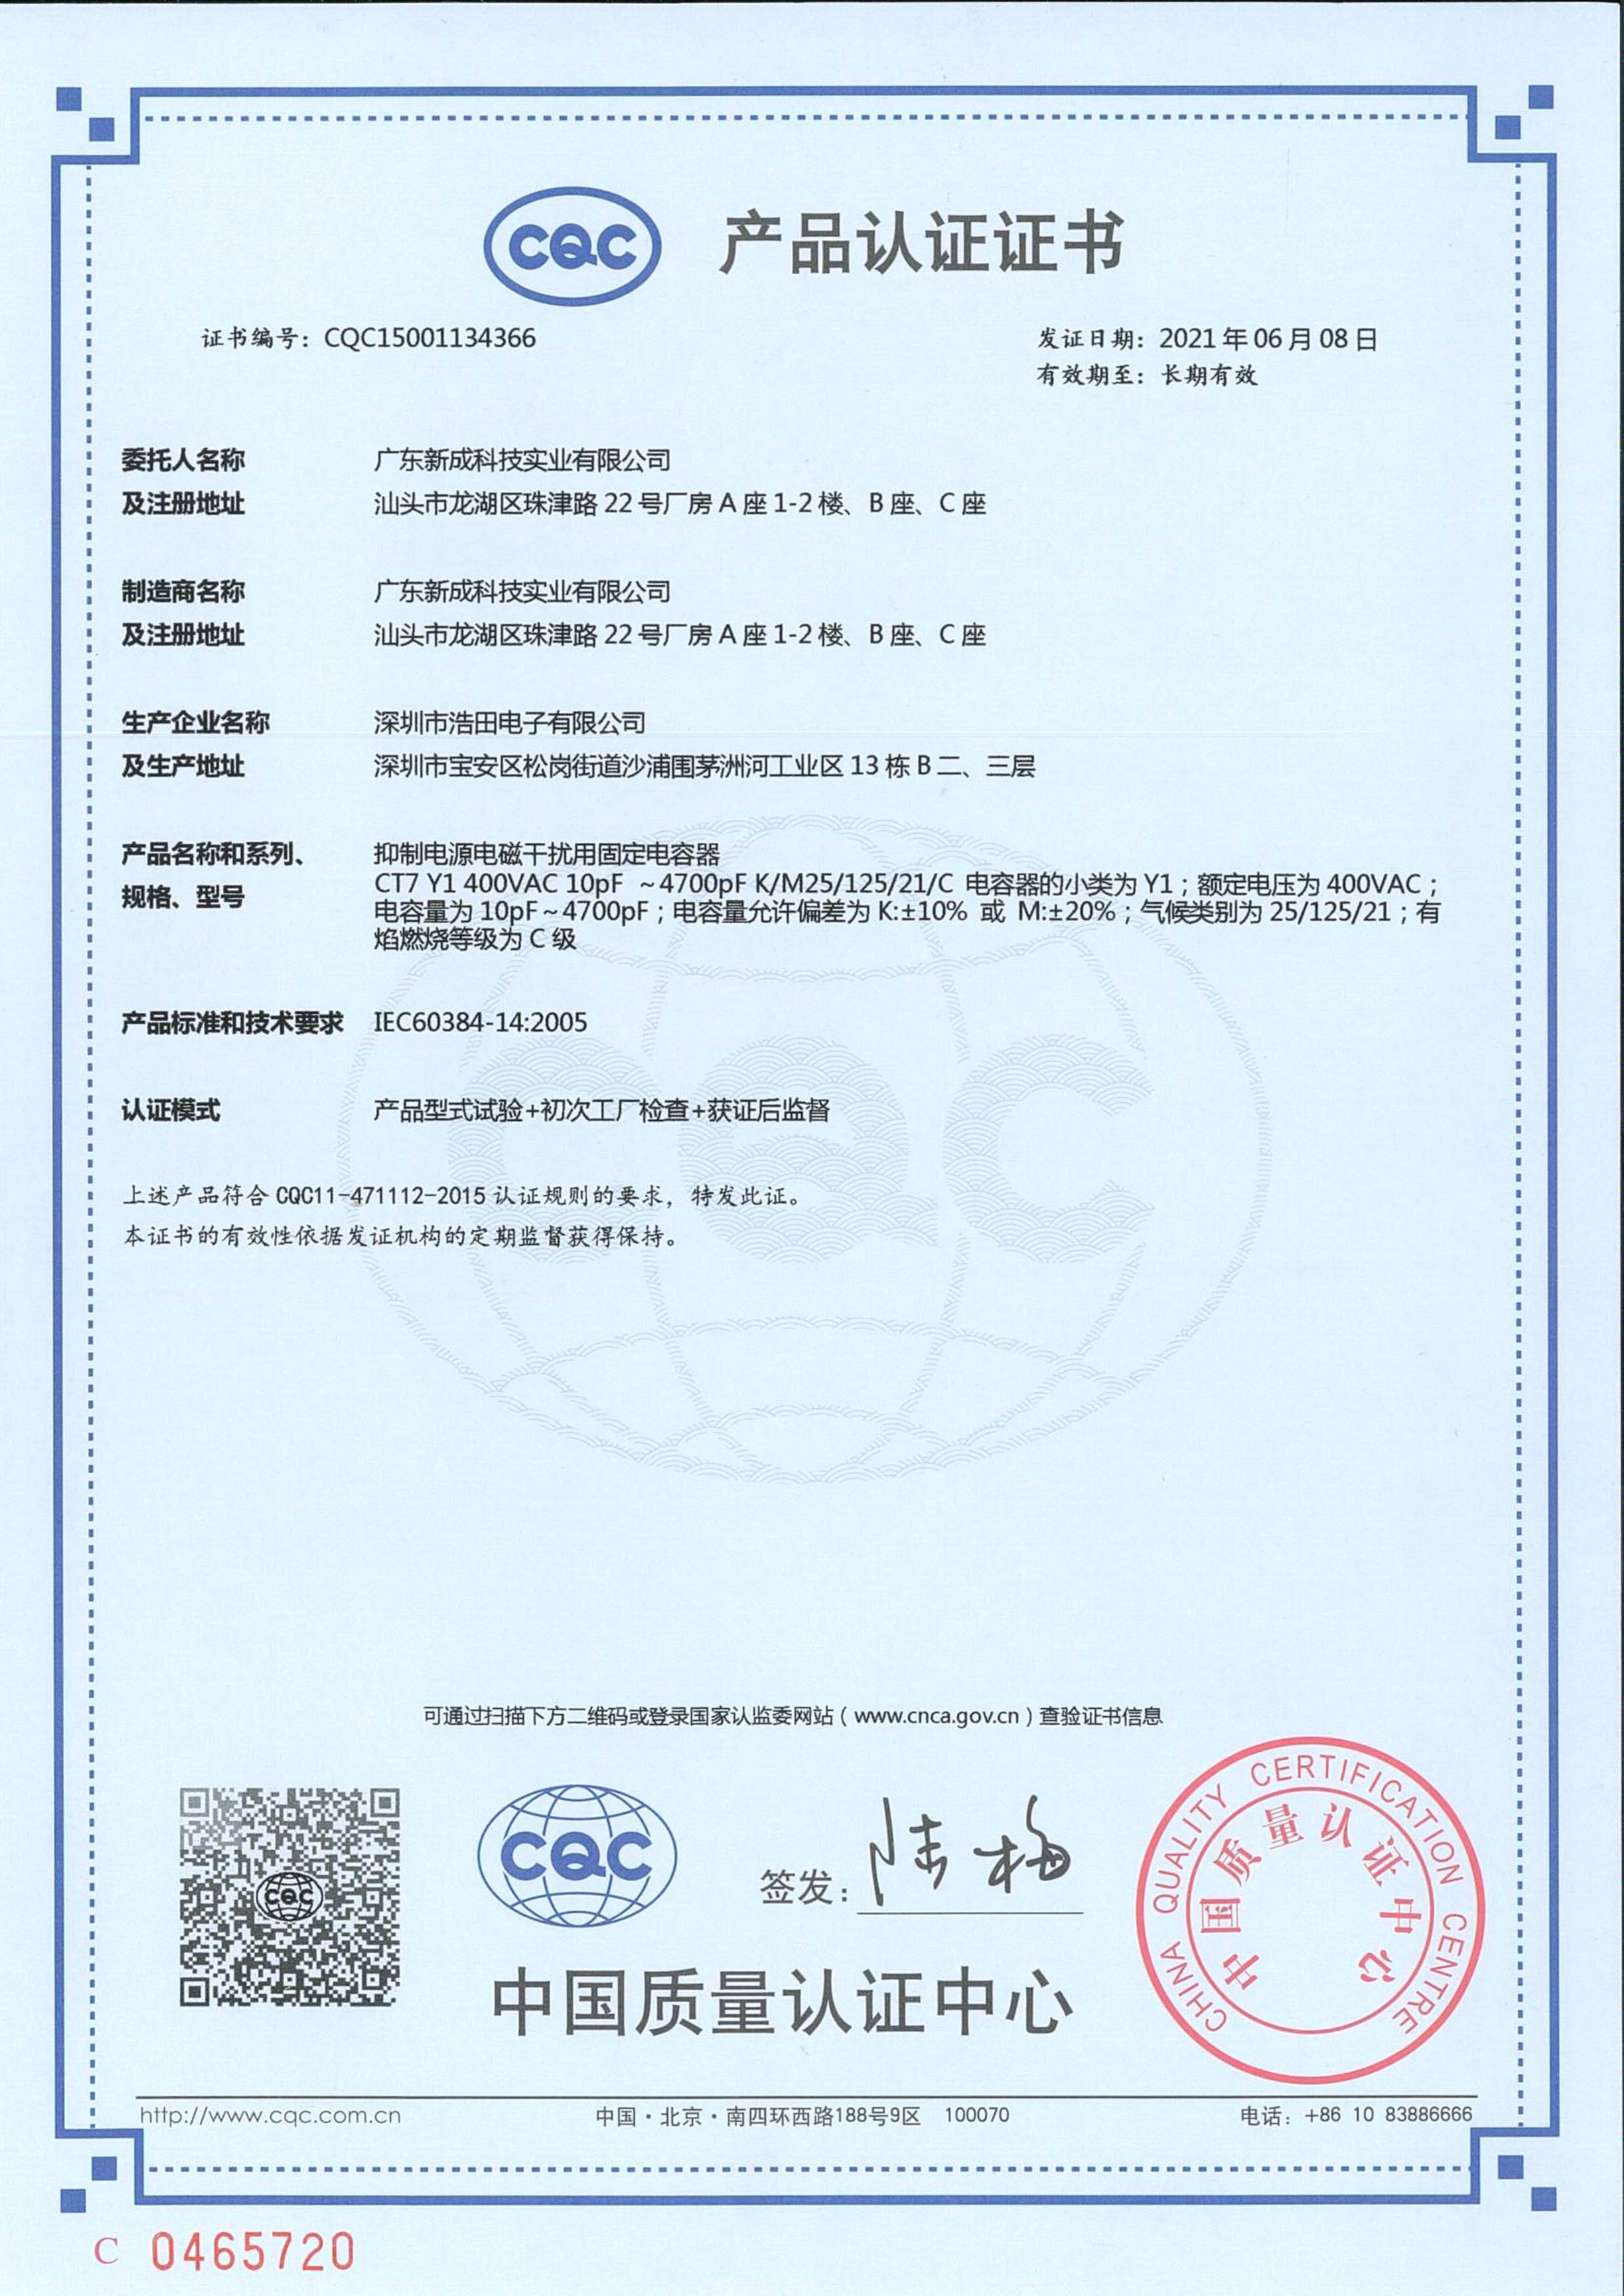 Y1/Y2 certification 1